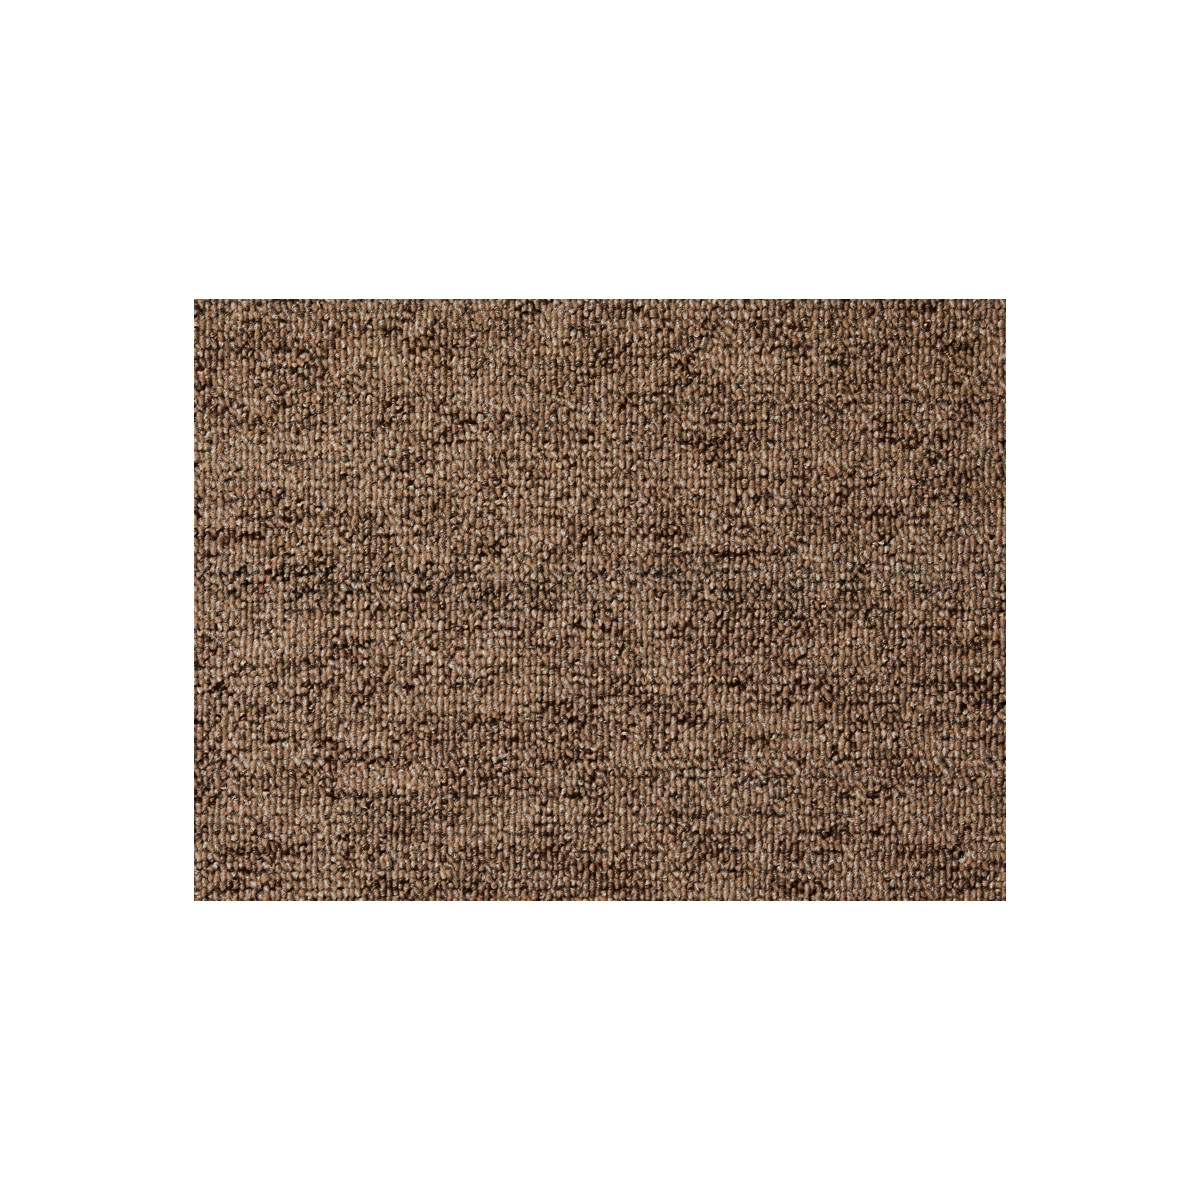 AKCE: 60x620 cm Metrážový koberec Monaco 92 hnědý